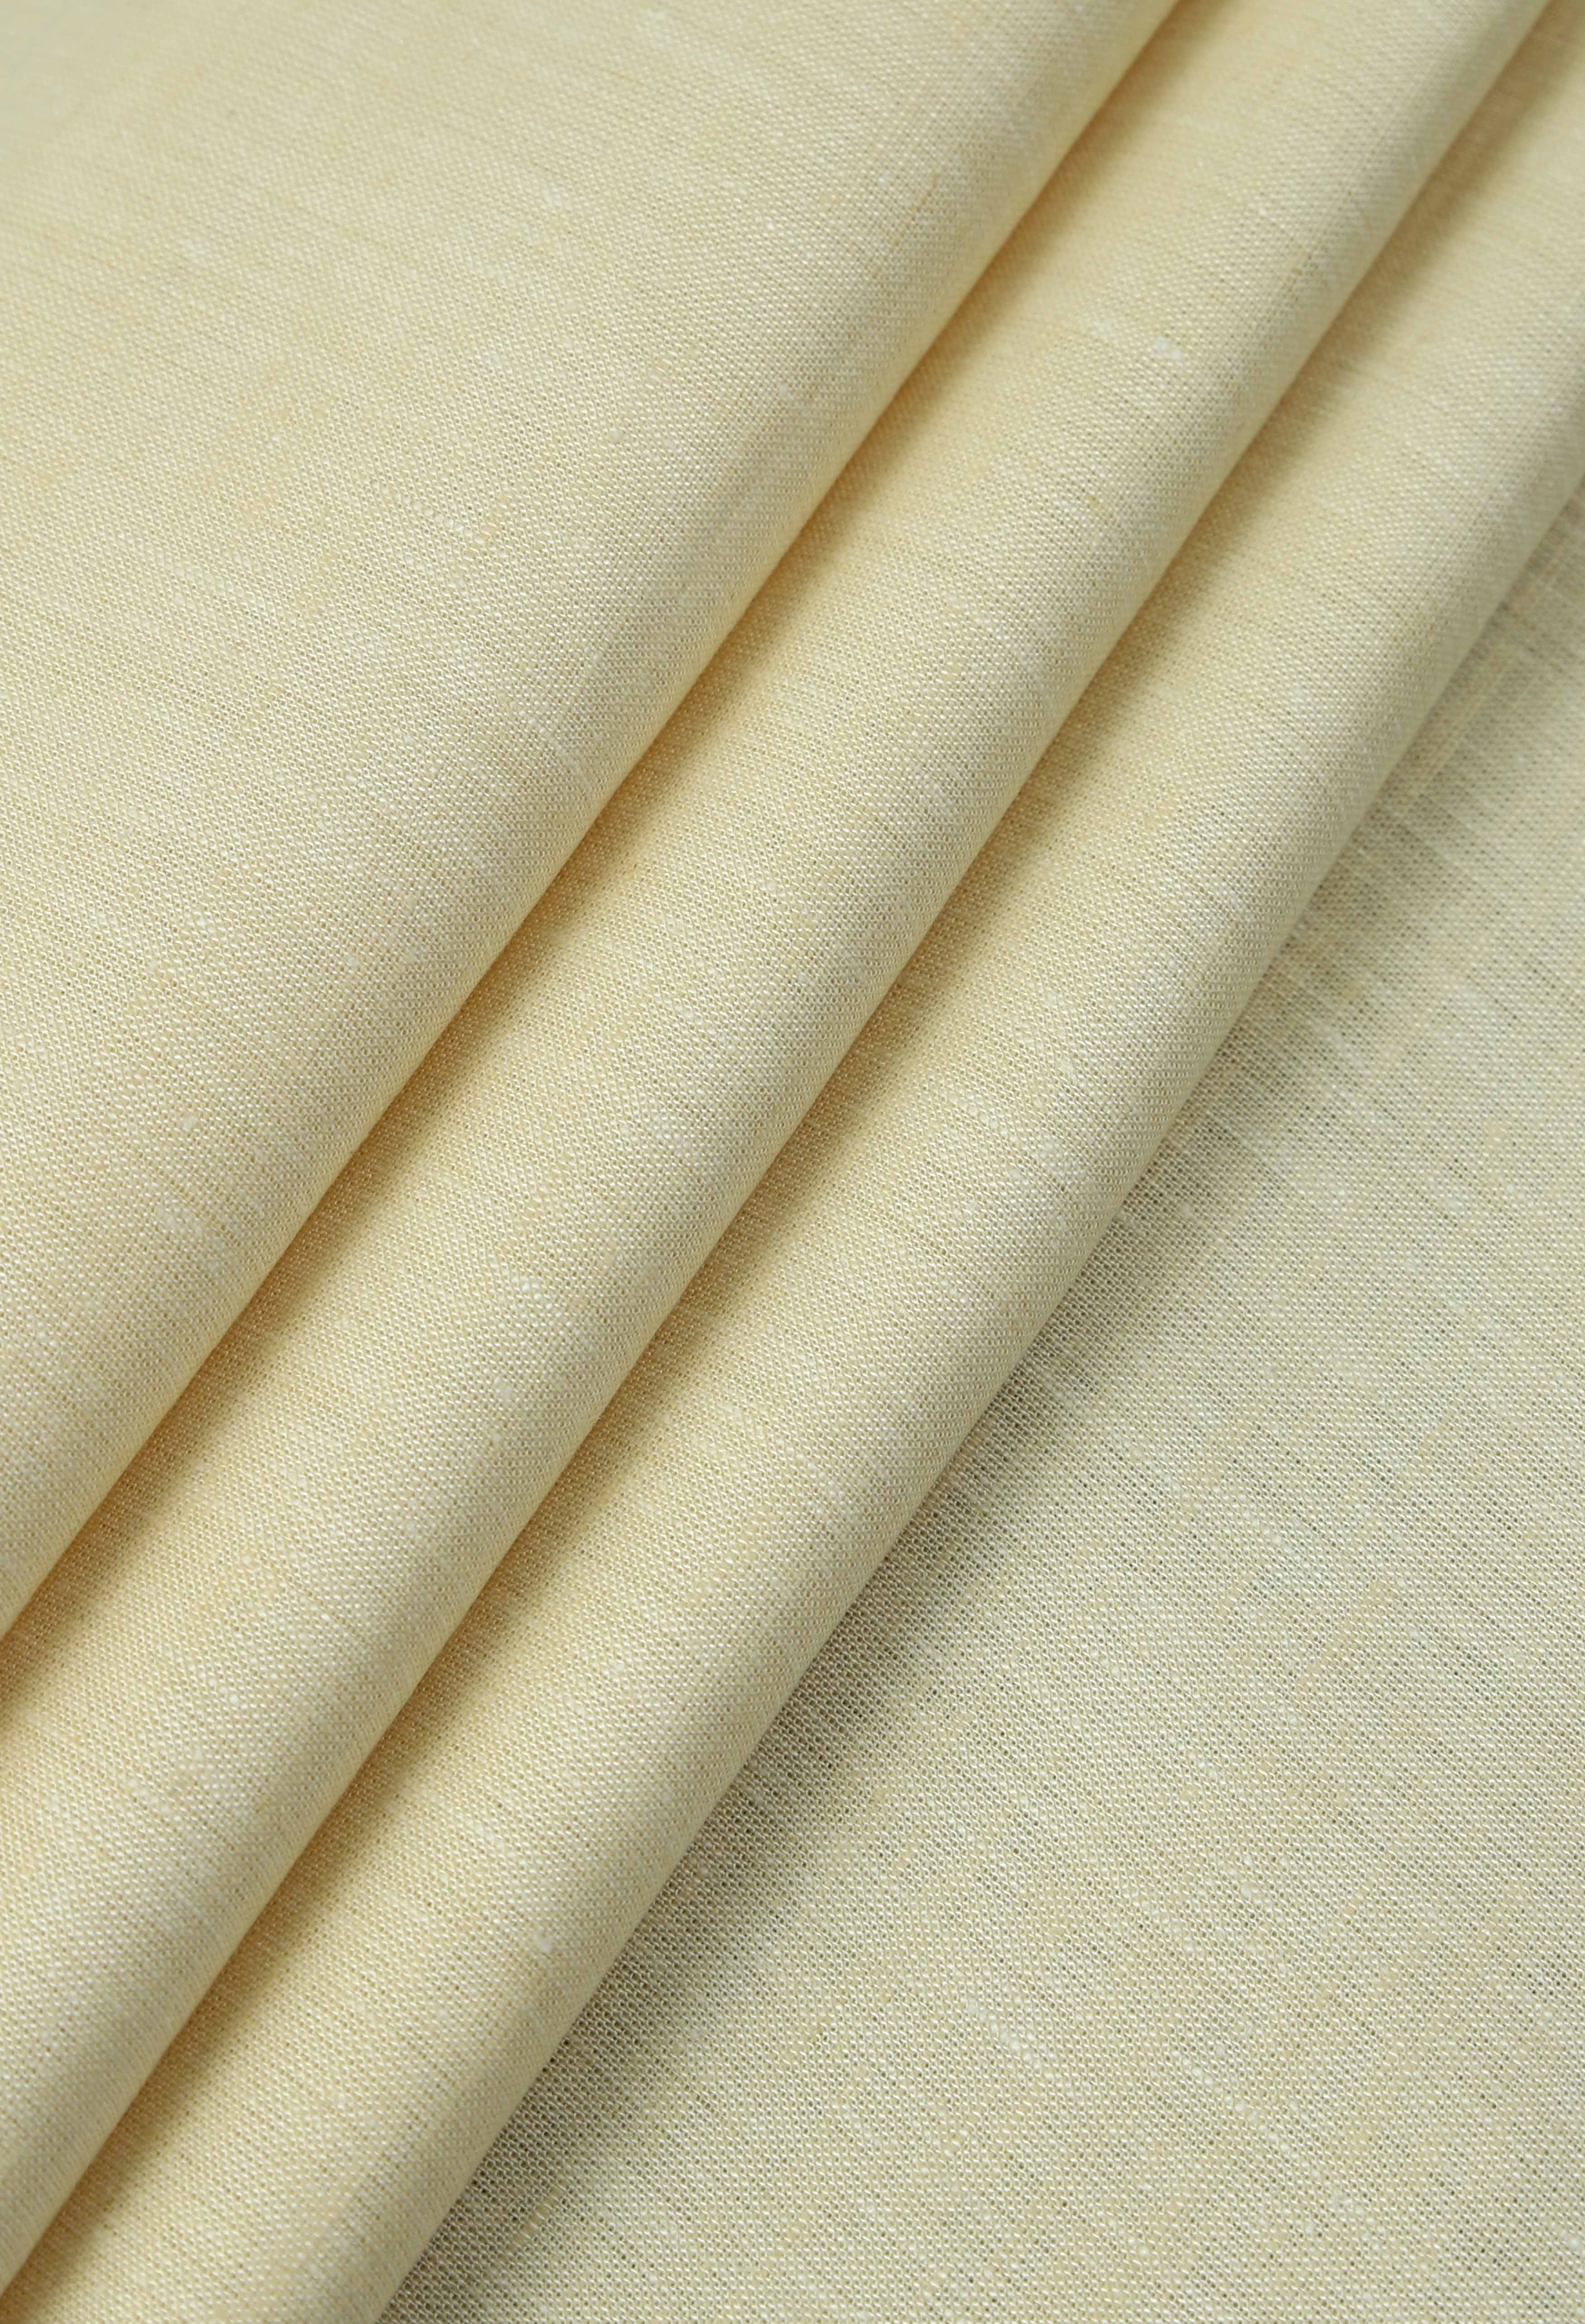 Butter Cream Linen (TH-000673)